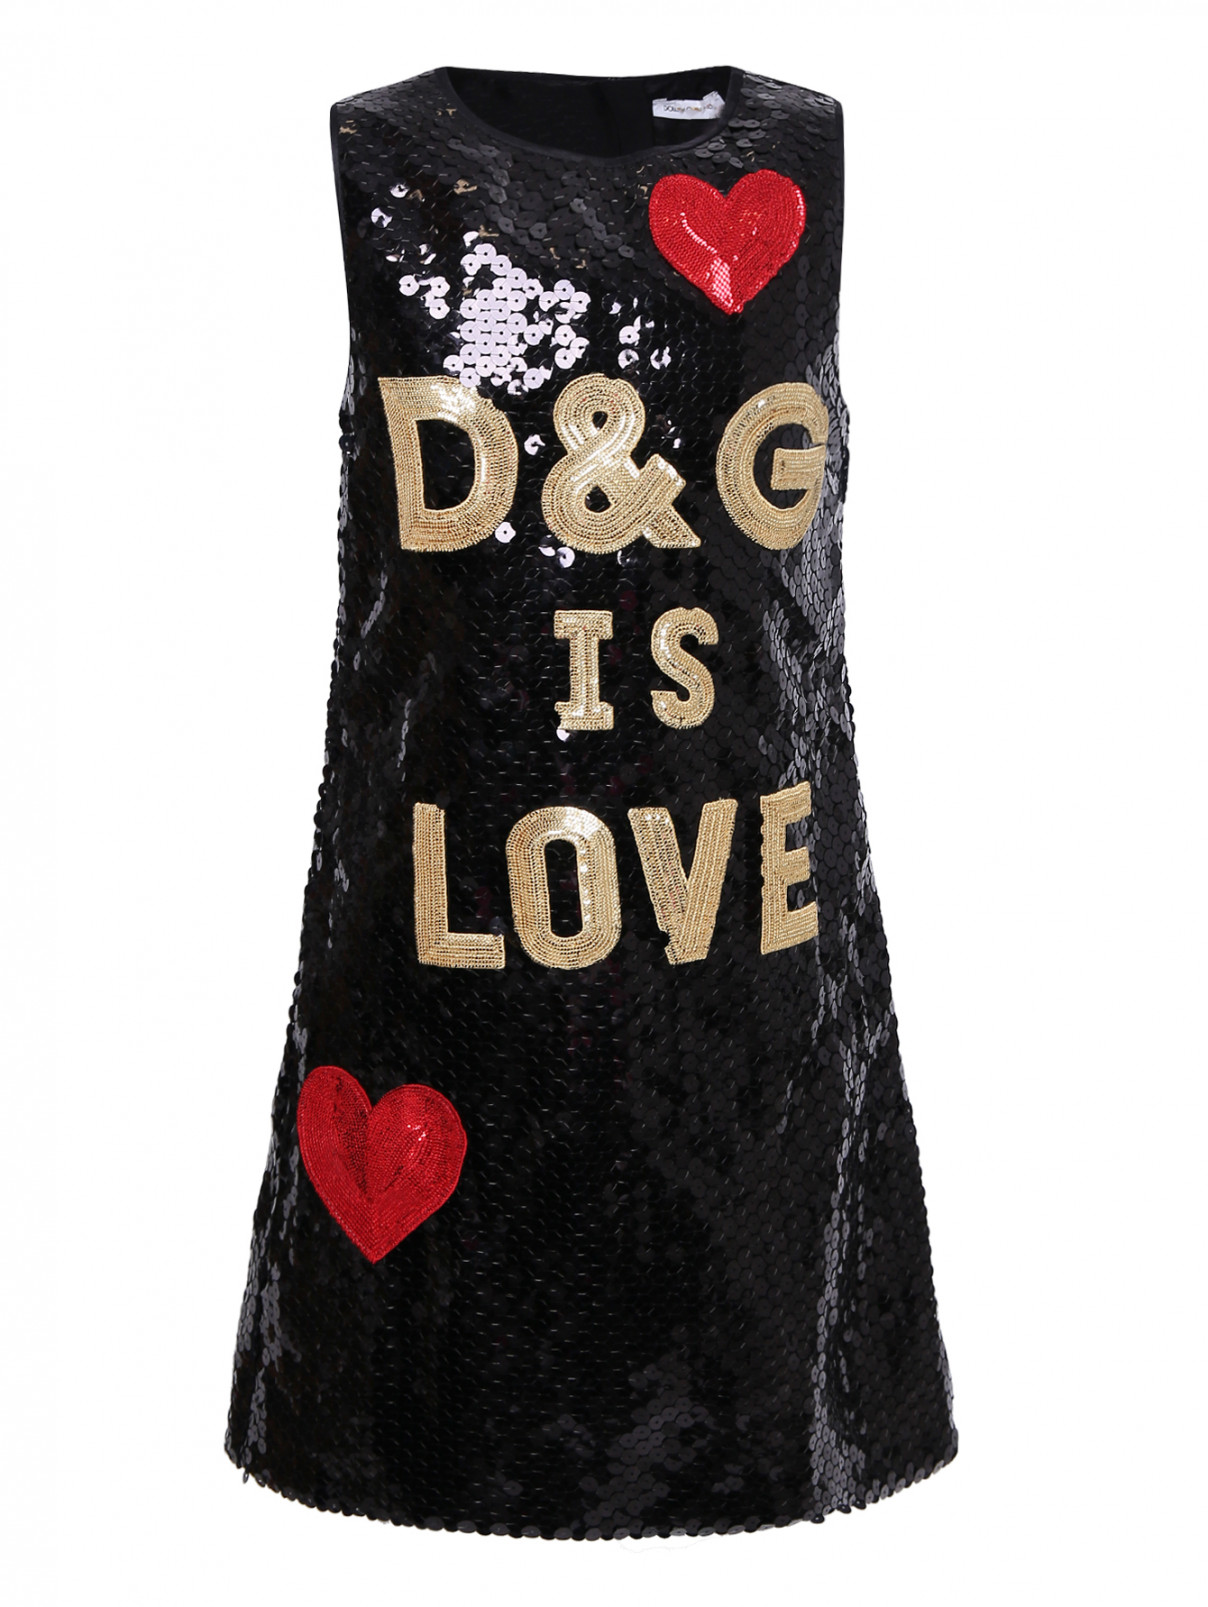 Платье расшитое пайетками Dolce & Gabbana  –  Общий вид  – Цвет:  Черный